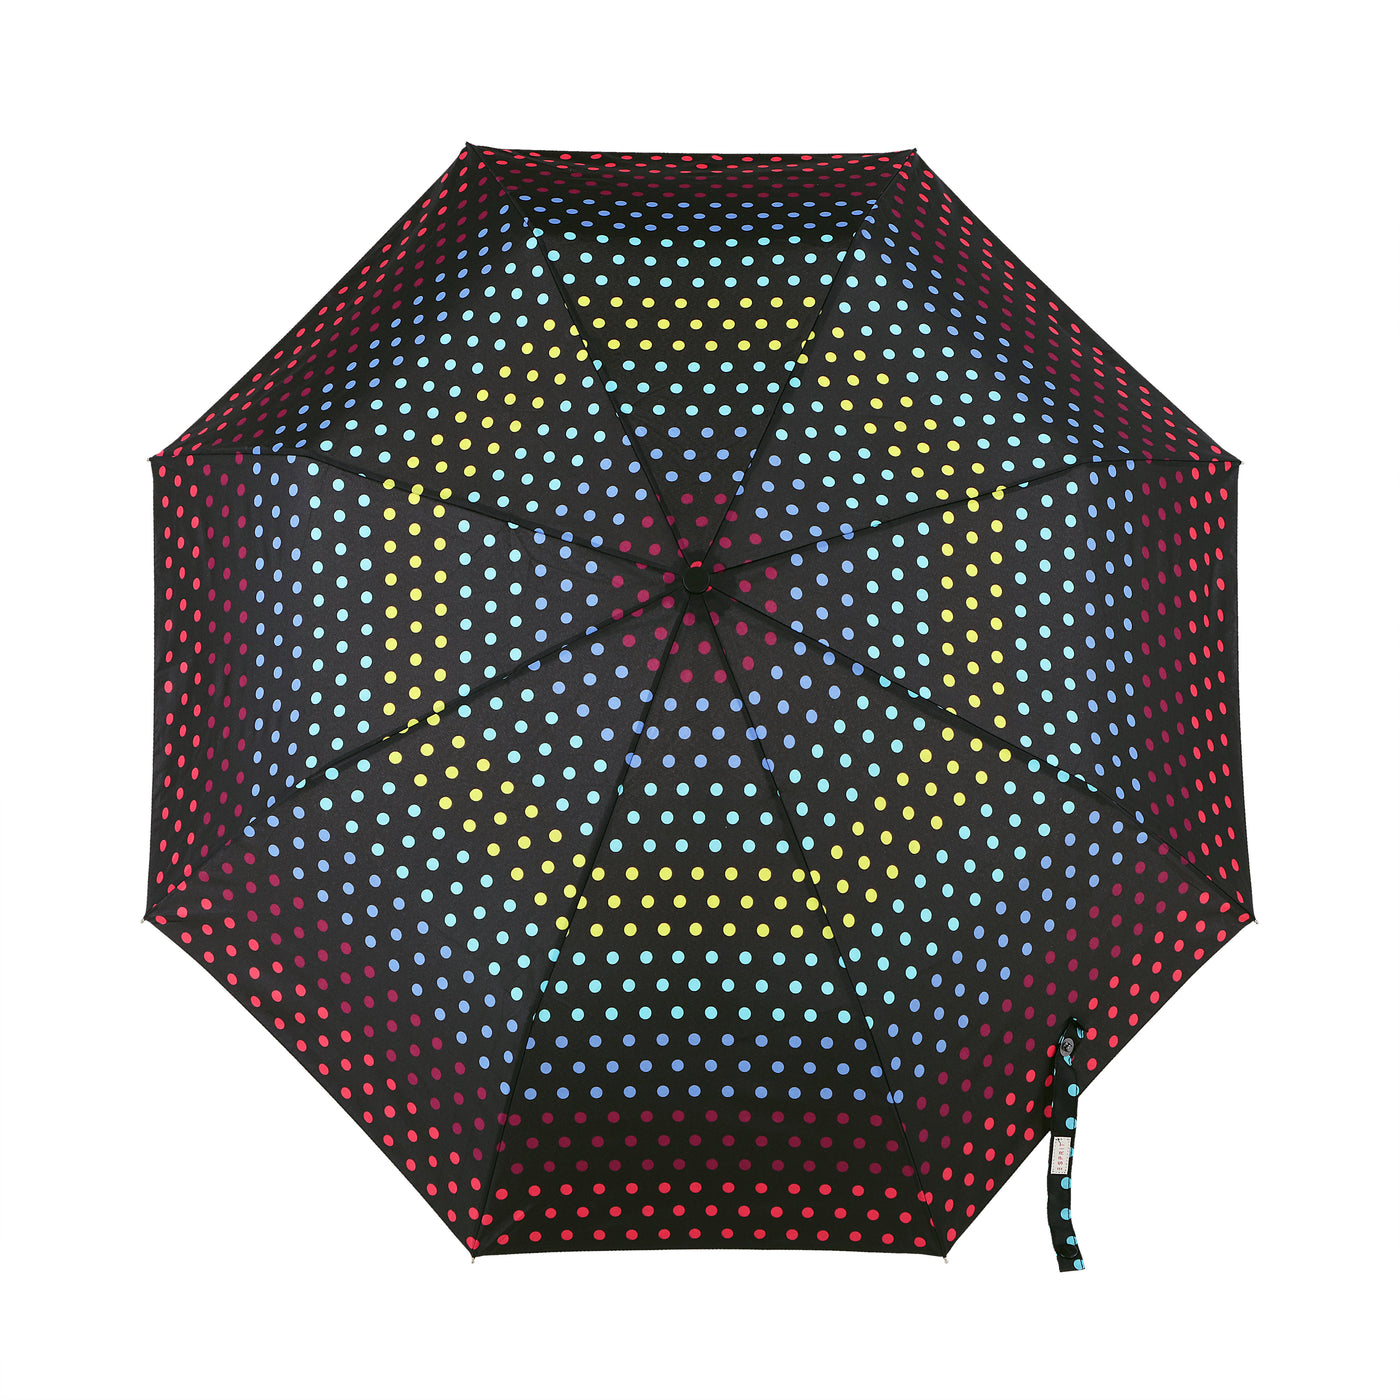 Esprit umbrella